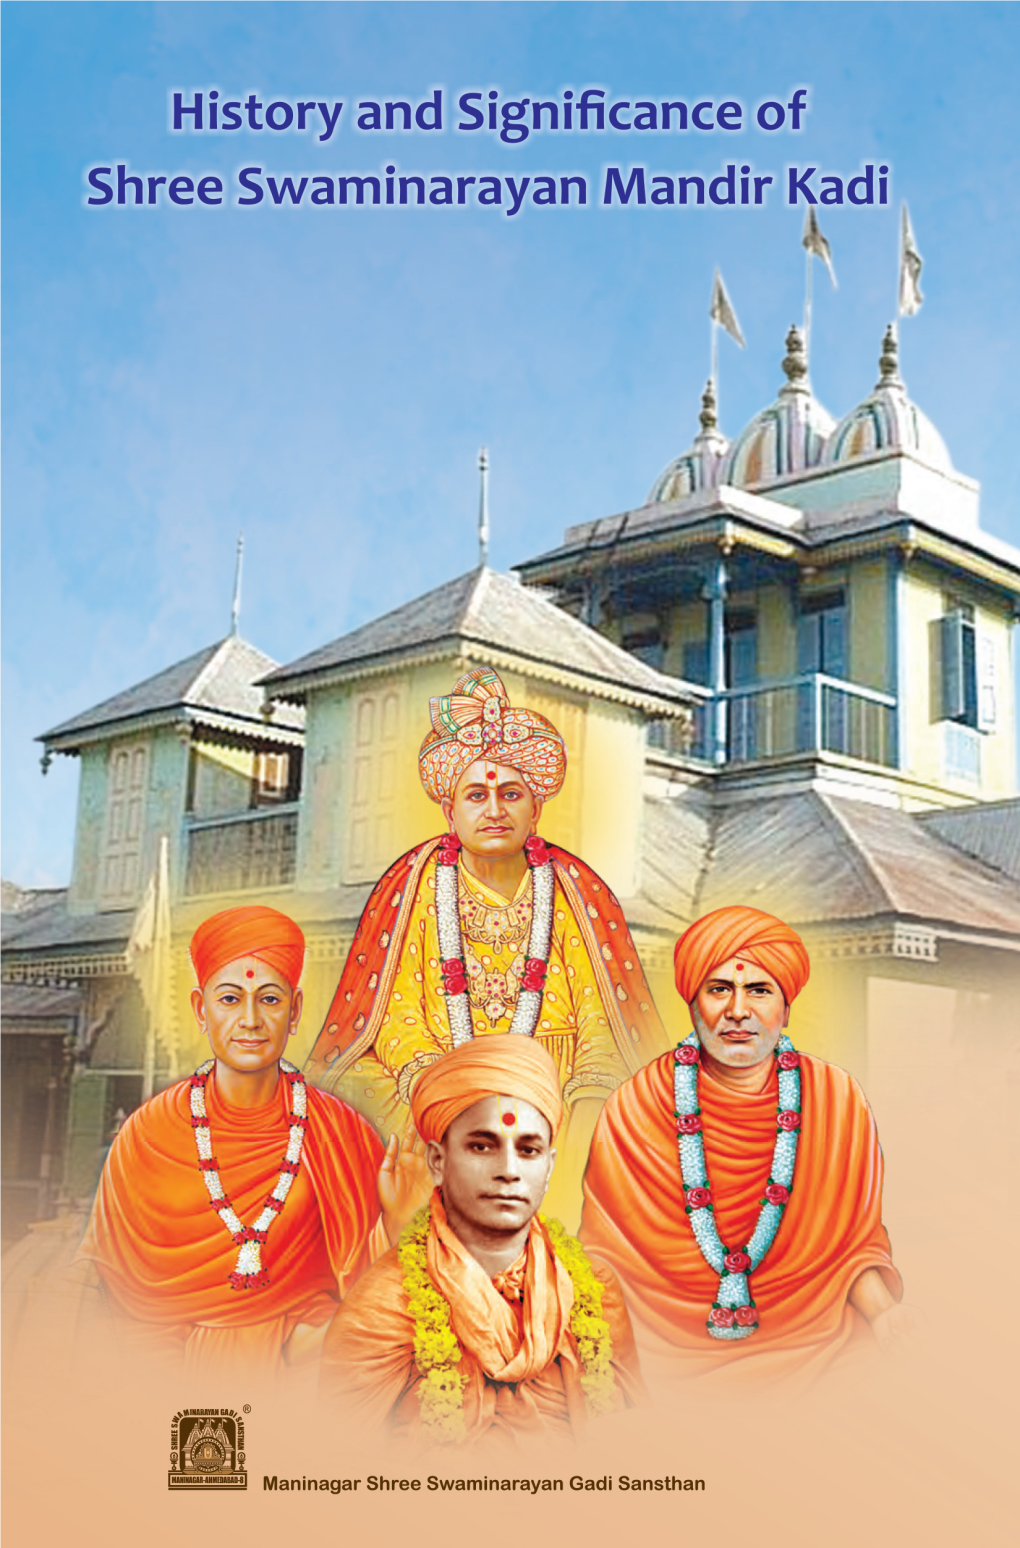 History and Significance of Shree Swaminarayan Mandir Kadi